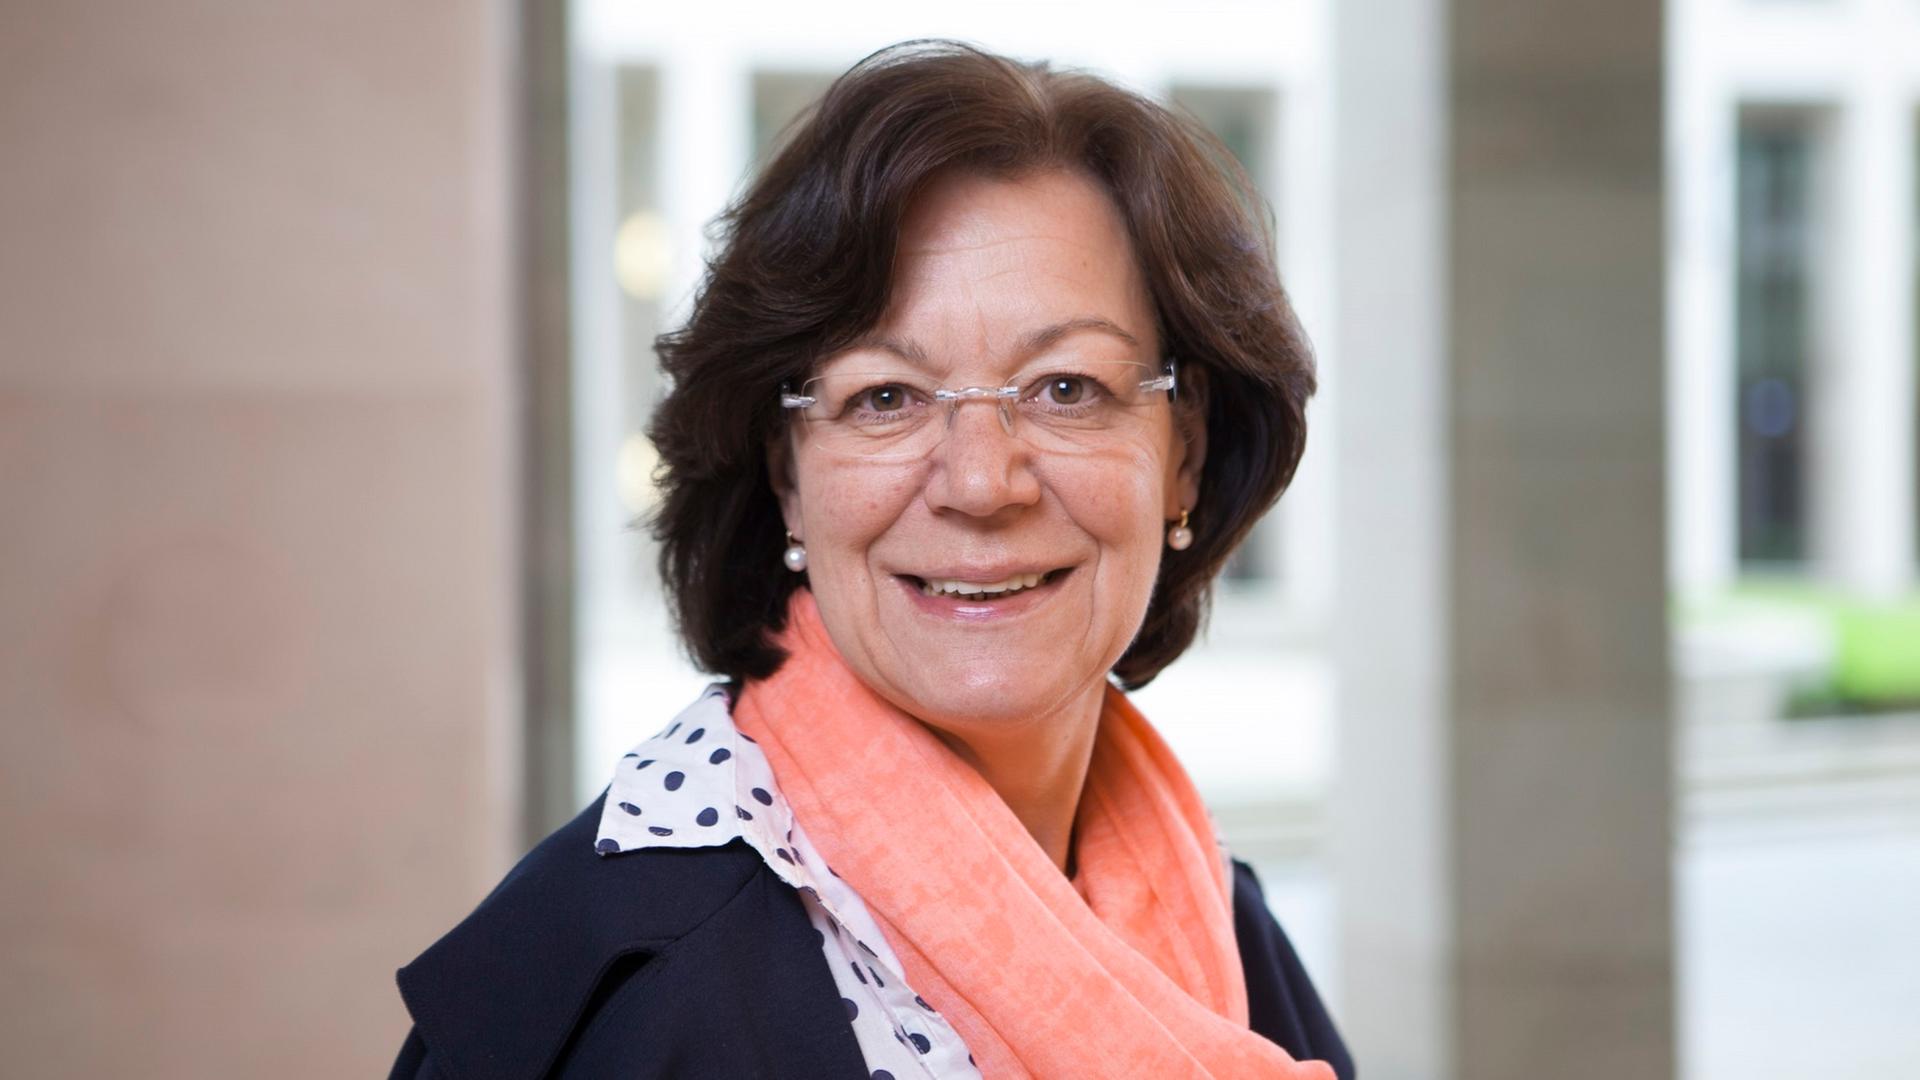 Porträt von Margret Schaaf, Vorsitzende des Bundesverbands Leselernhelfer. Sie hat braune, schulterlange Haare, trägt eine randlose Brille und lächelt in die Kamera.